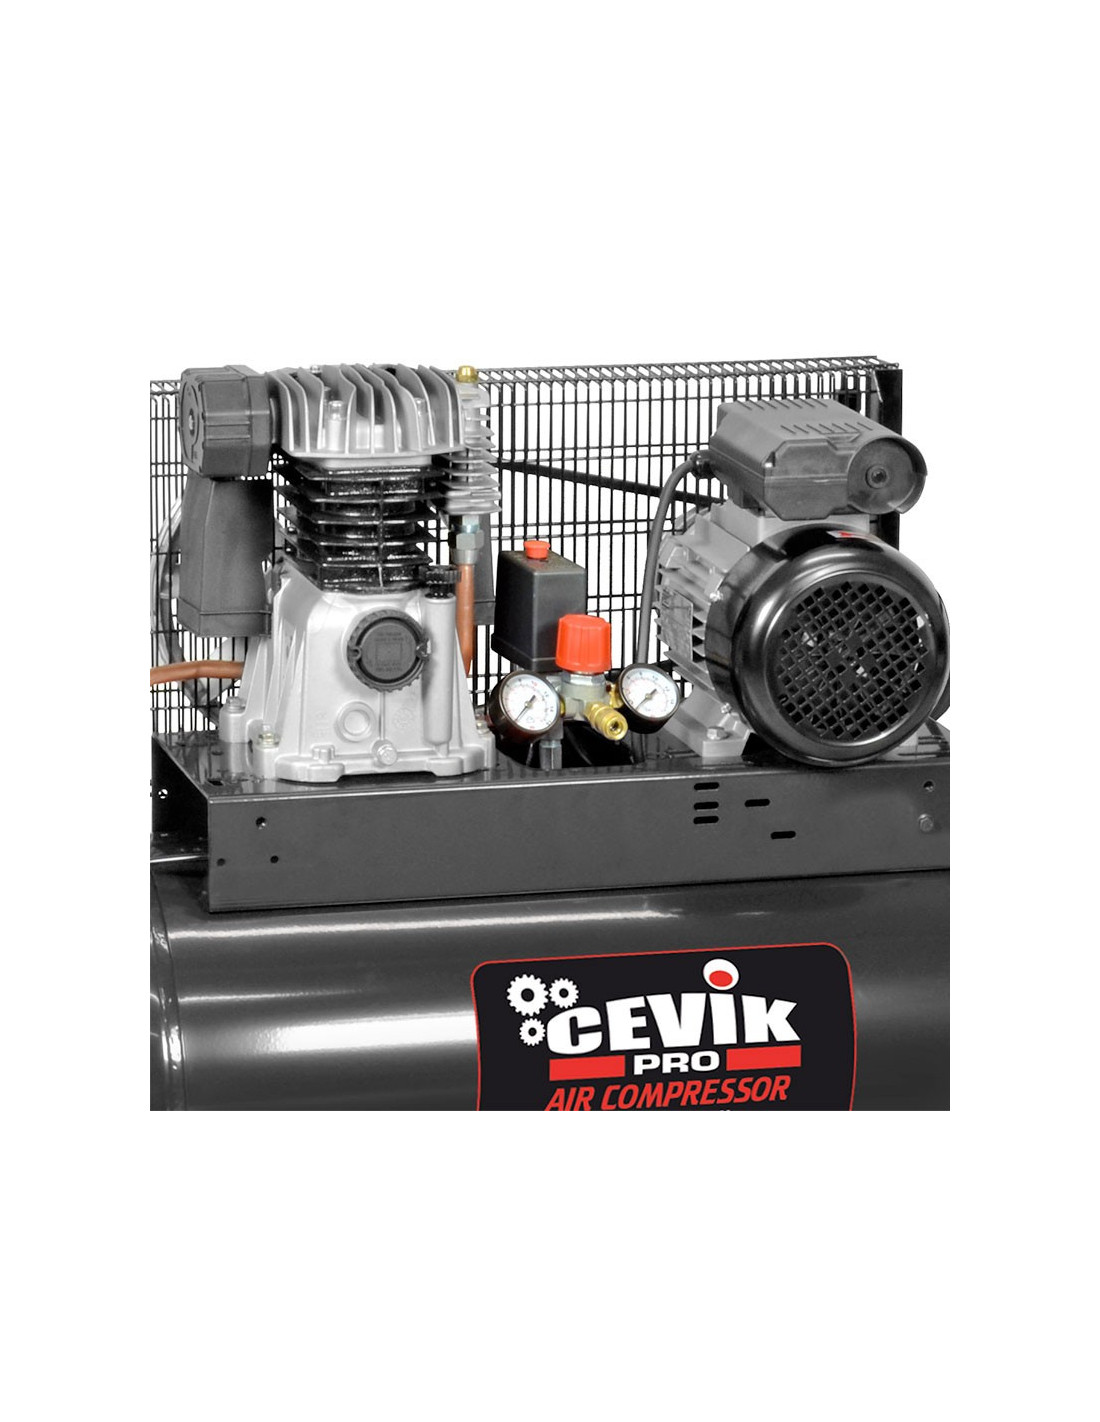 Compresor Cevik AB100/2M 100 litros